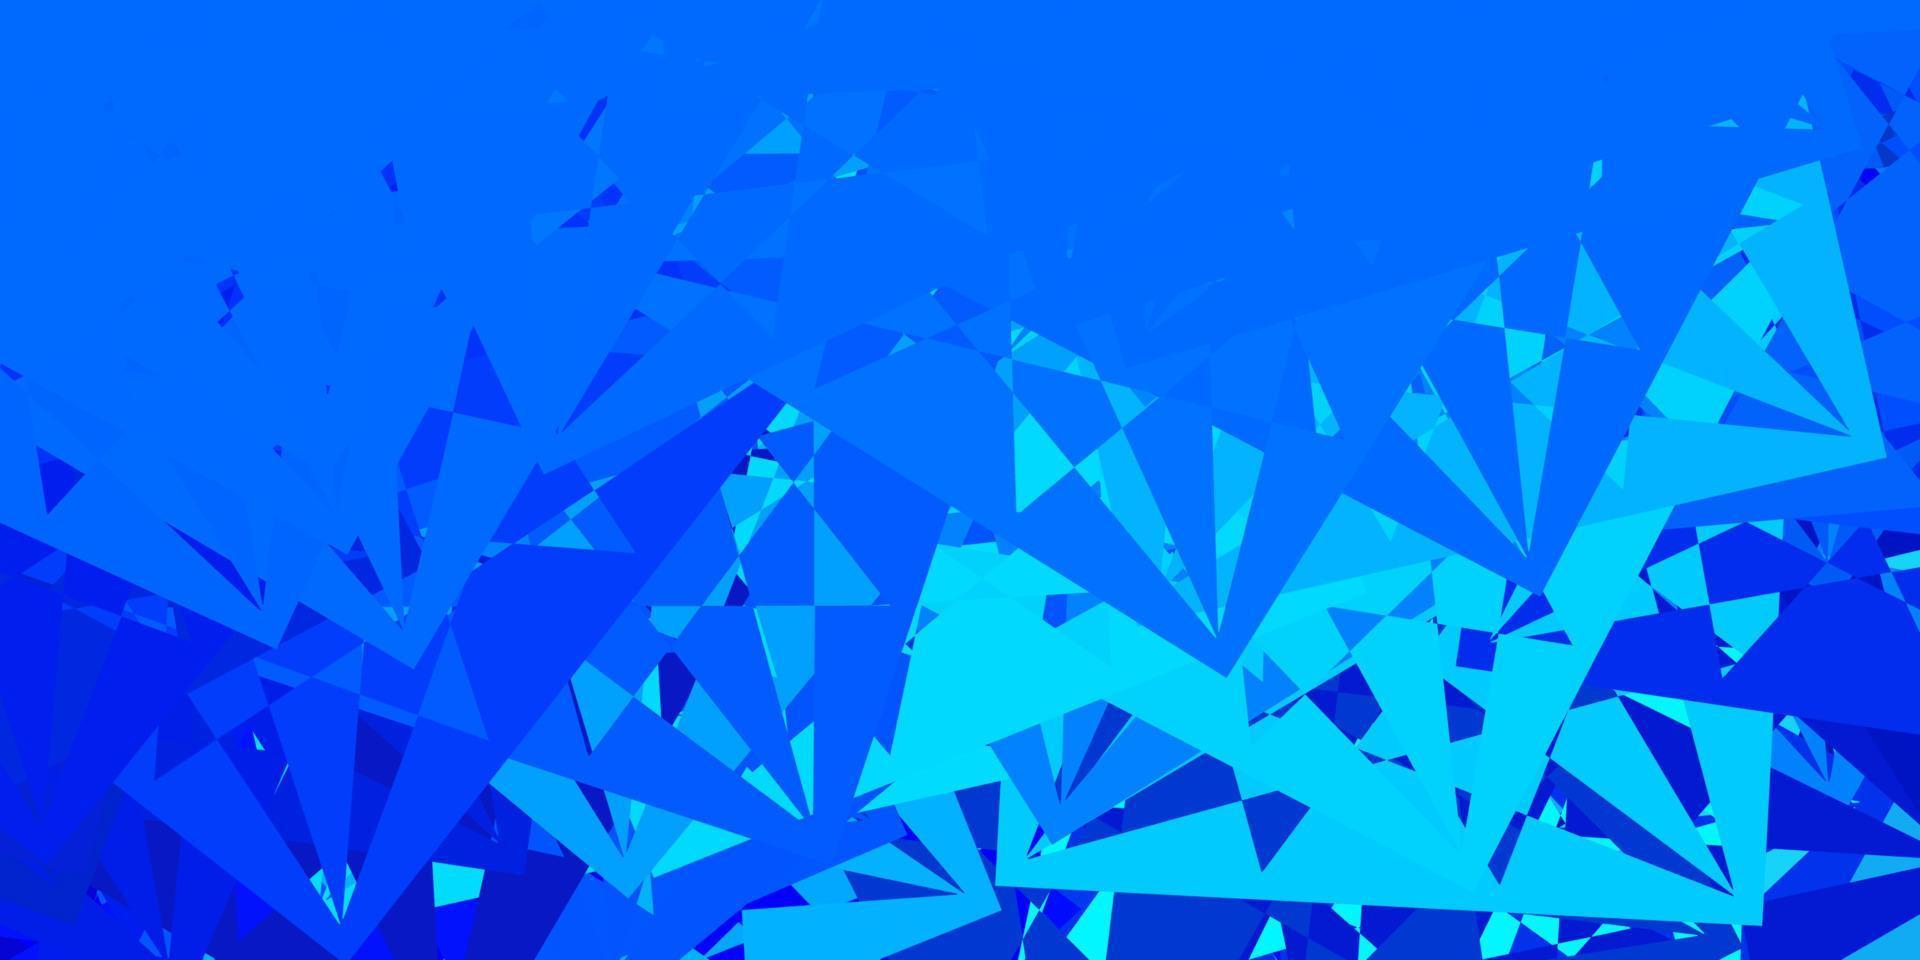 fond de vecteur bleu foncé avec des triangles.